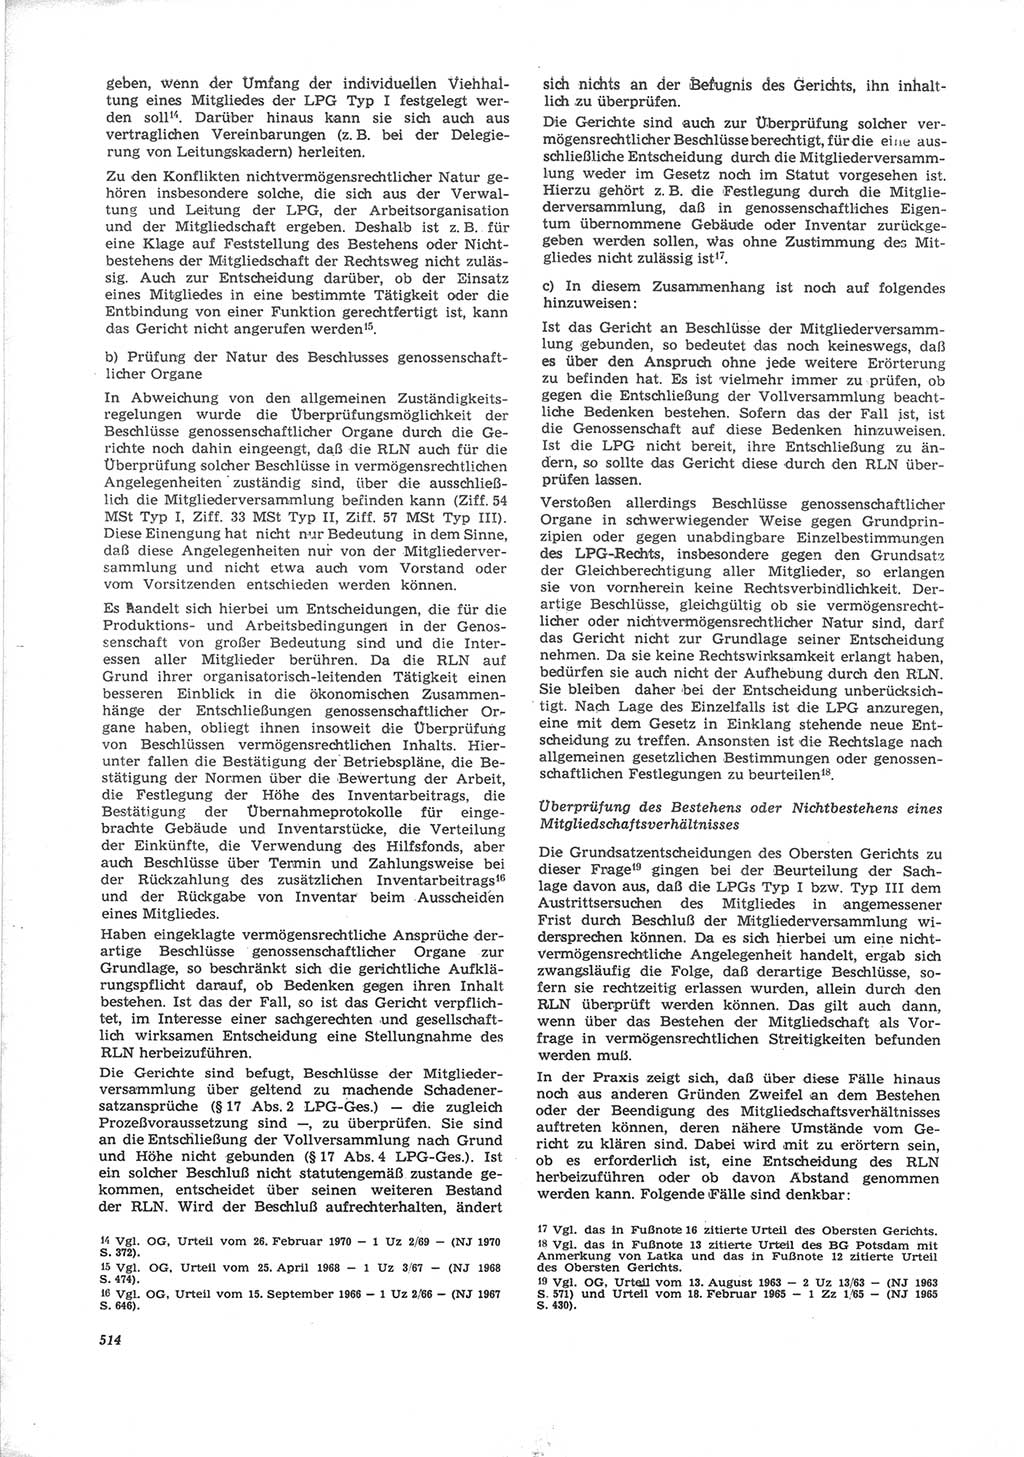 Neue Justiz (NJ), Zeitschrift für Recht und Rechtswissenschaft [Deutsche Demokratische Republik (DDR)], 24. Jahrgang 1970, Seite 514 (NJ DDR 1970, S. 514)